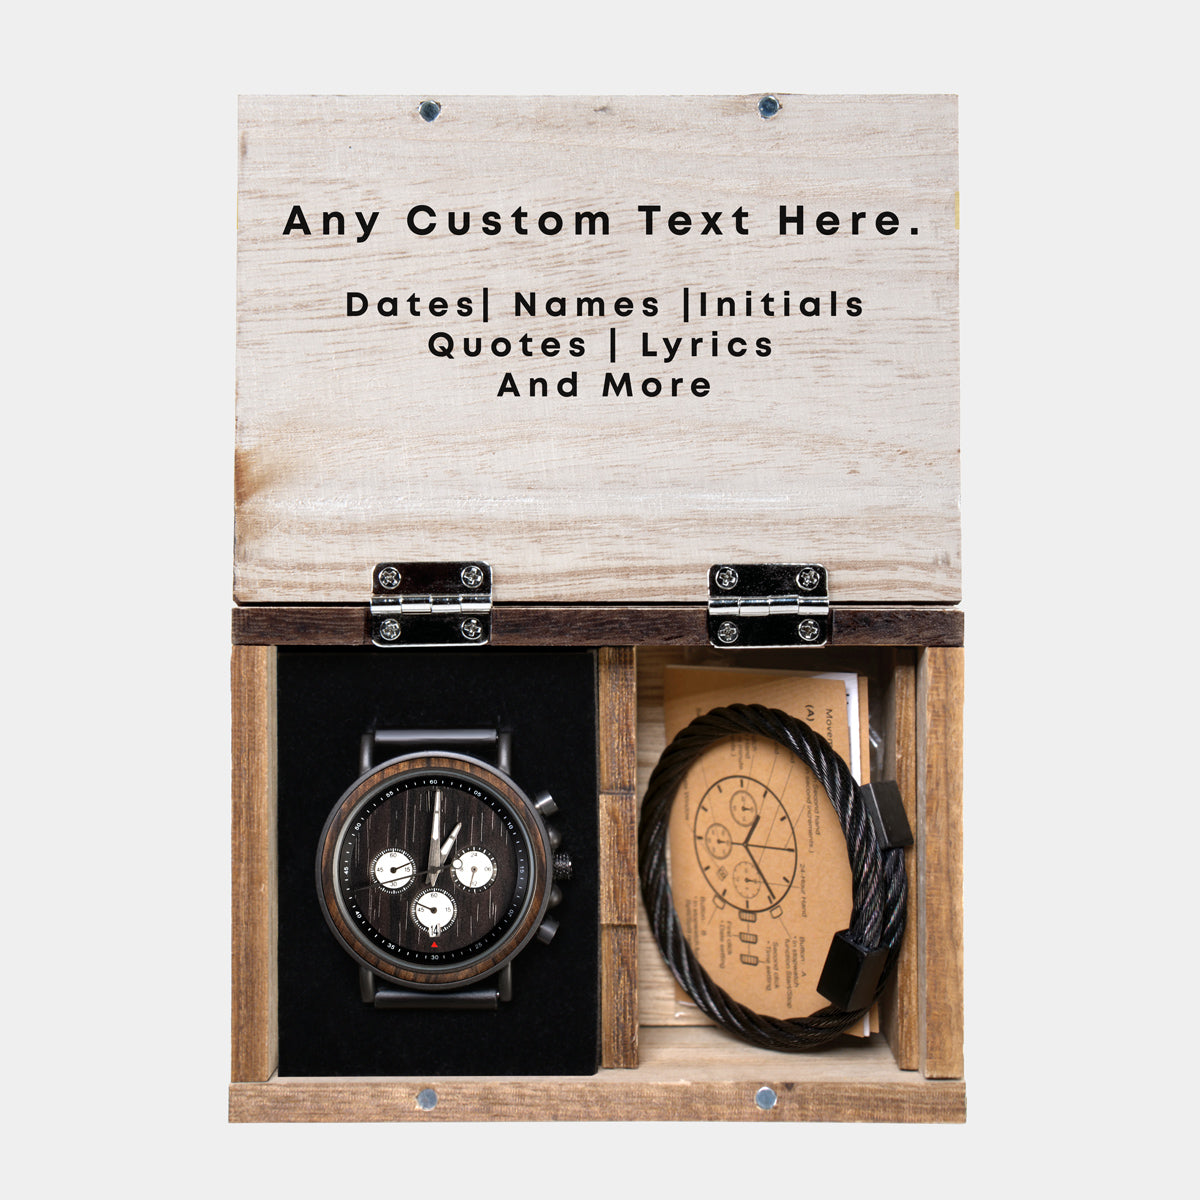 Philadelphia Union Wooden Wristwatch - Chronograph Black Walnut Watch